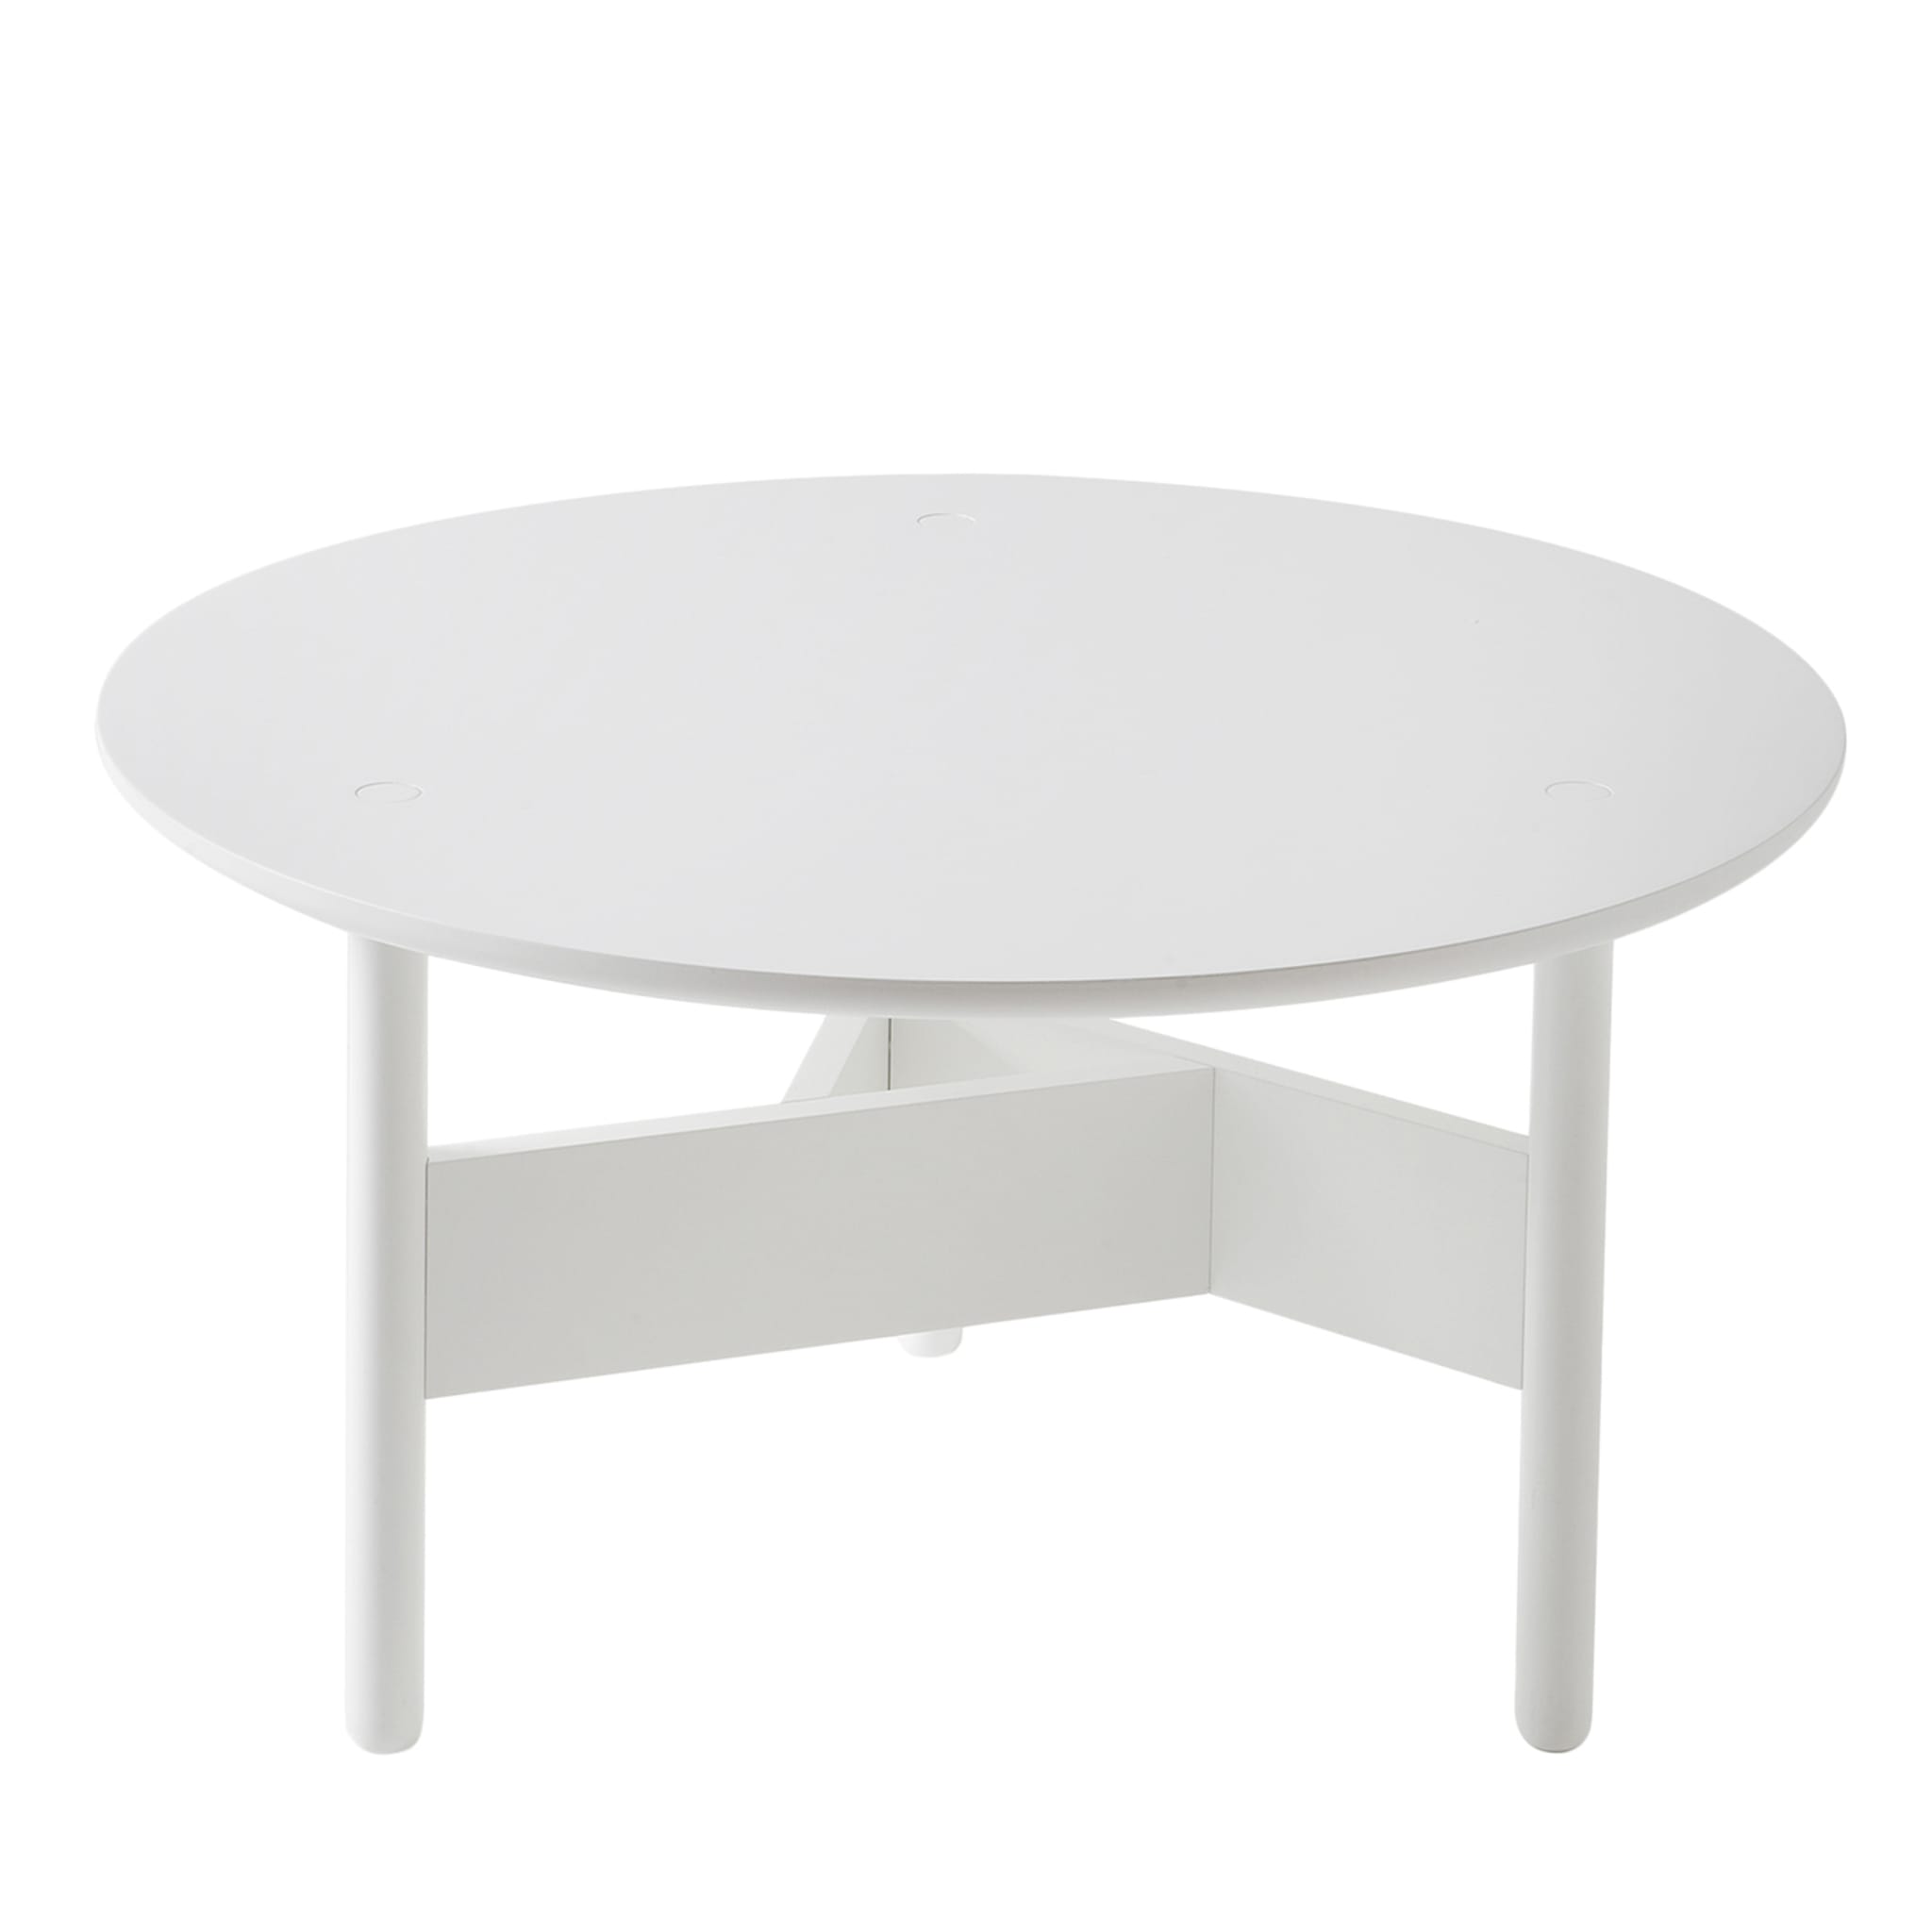 Orbital Ø 70 cm White Coffee Table by J. Pastorino & C. Suarez - Main view